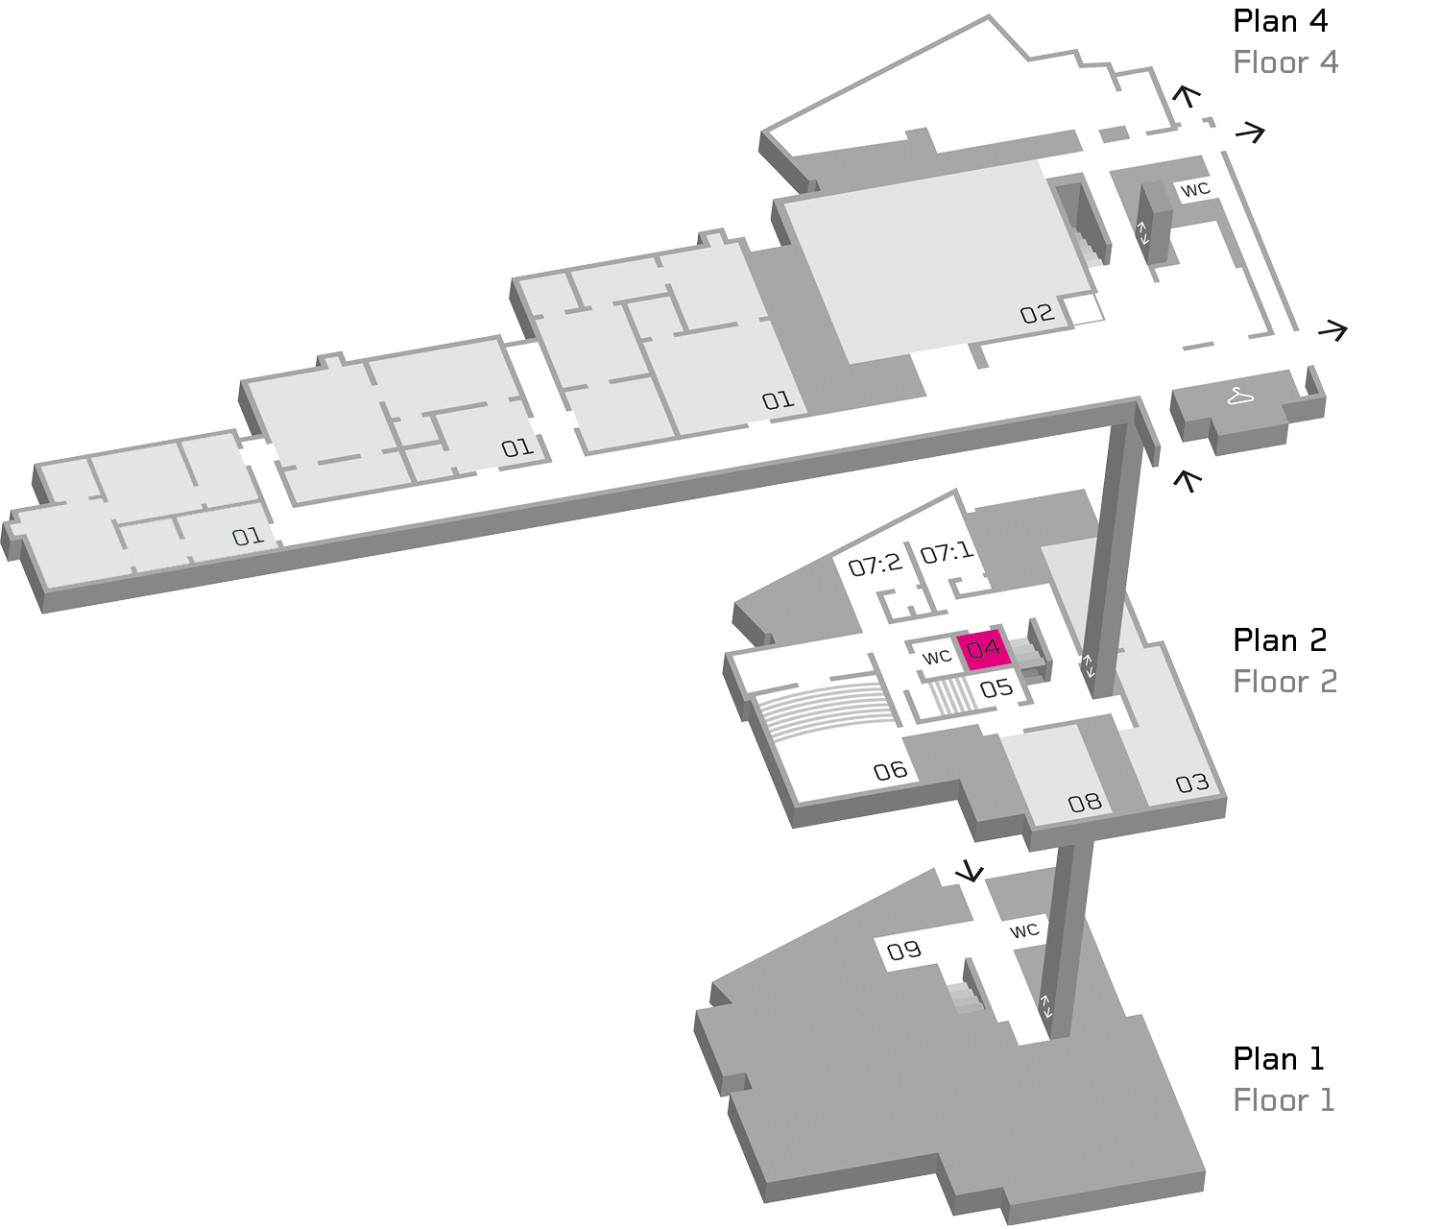 Karta över Moderna Museet med Minibion markerad i lila.